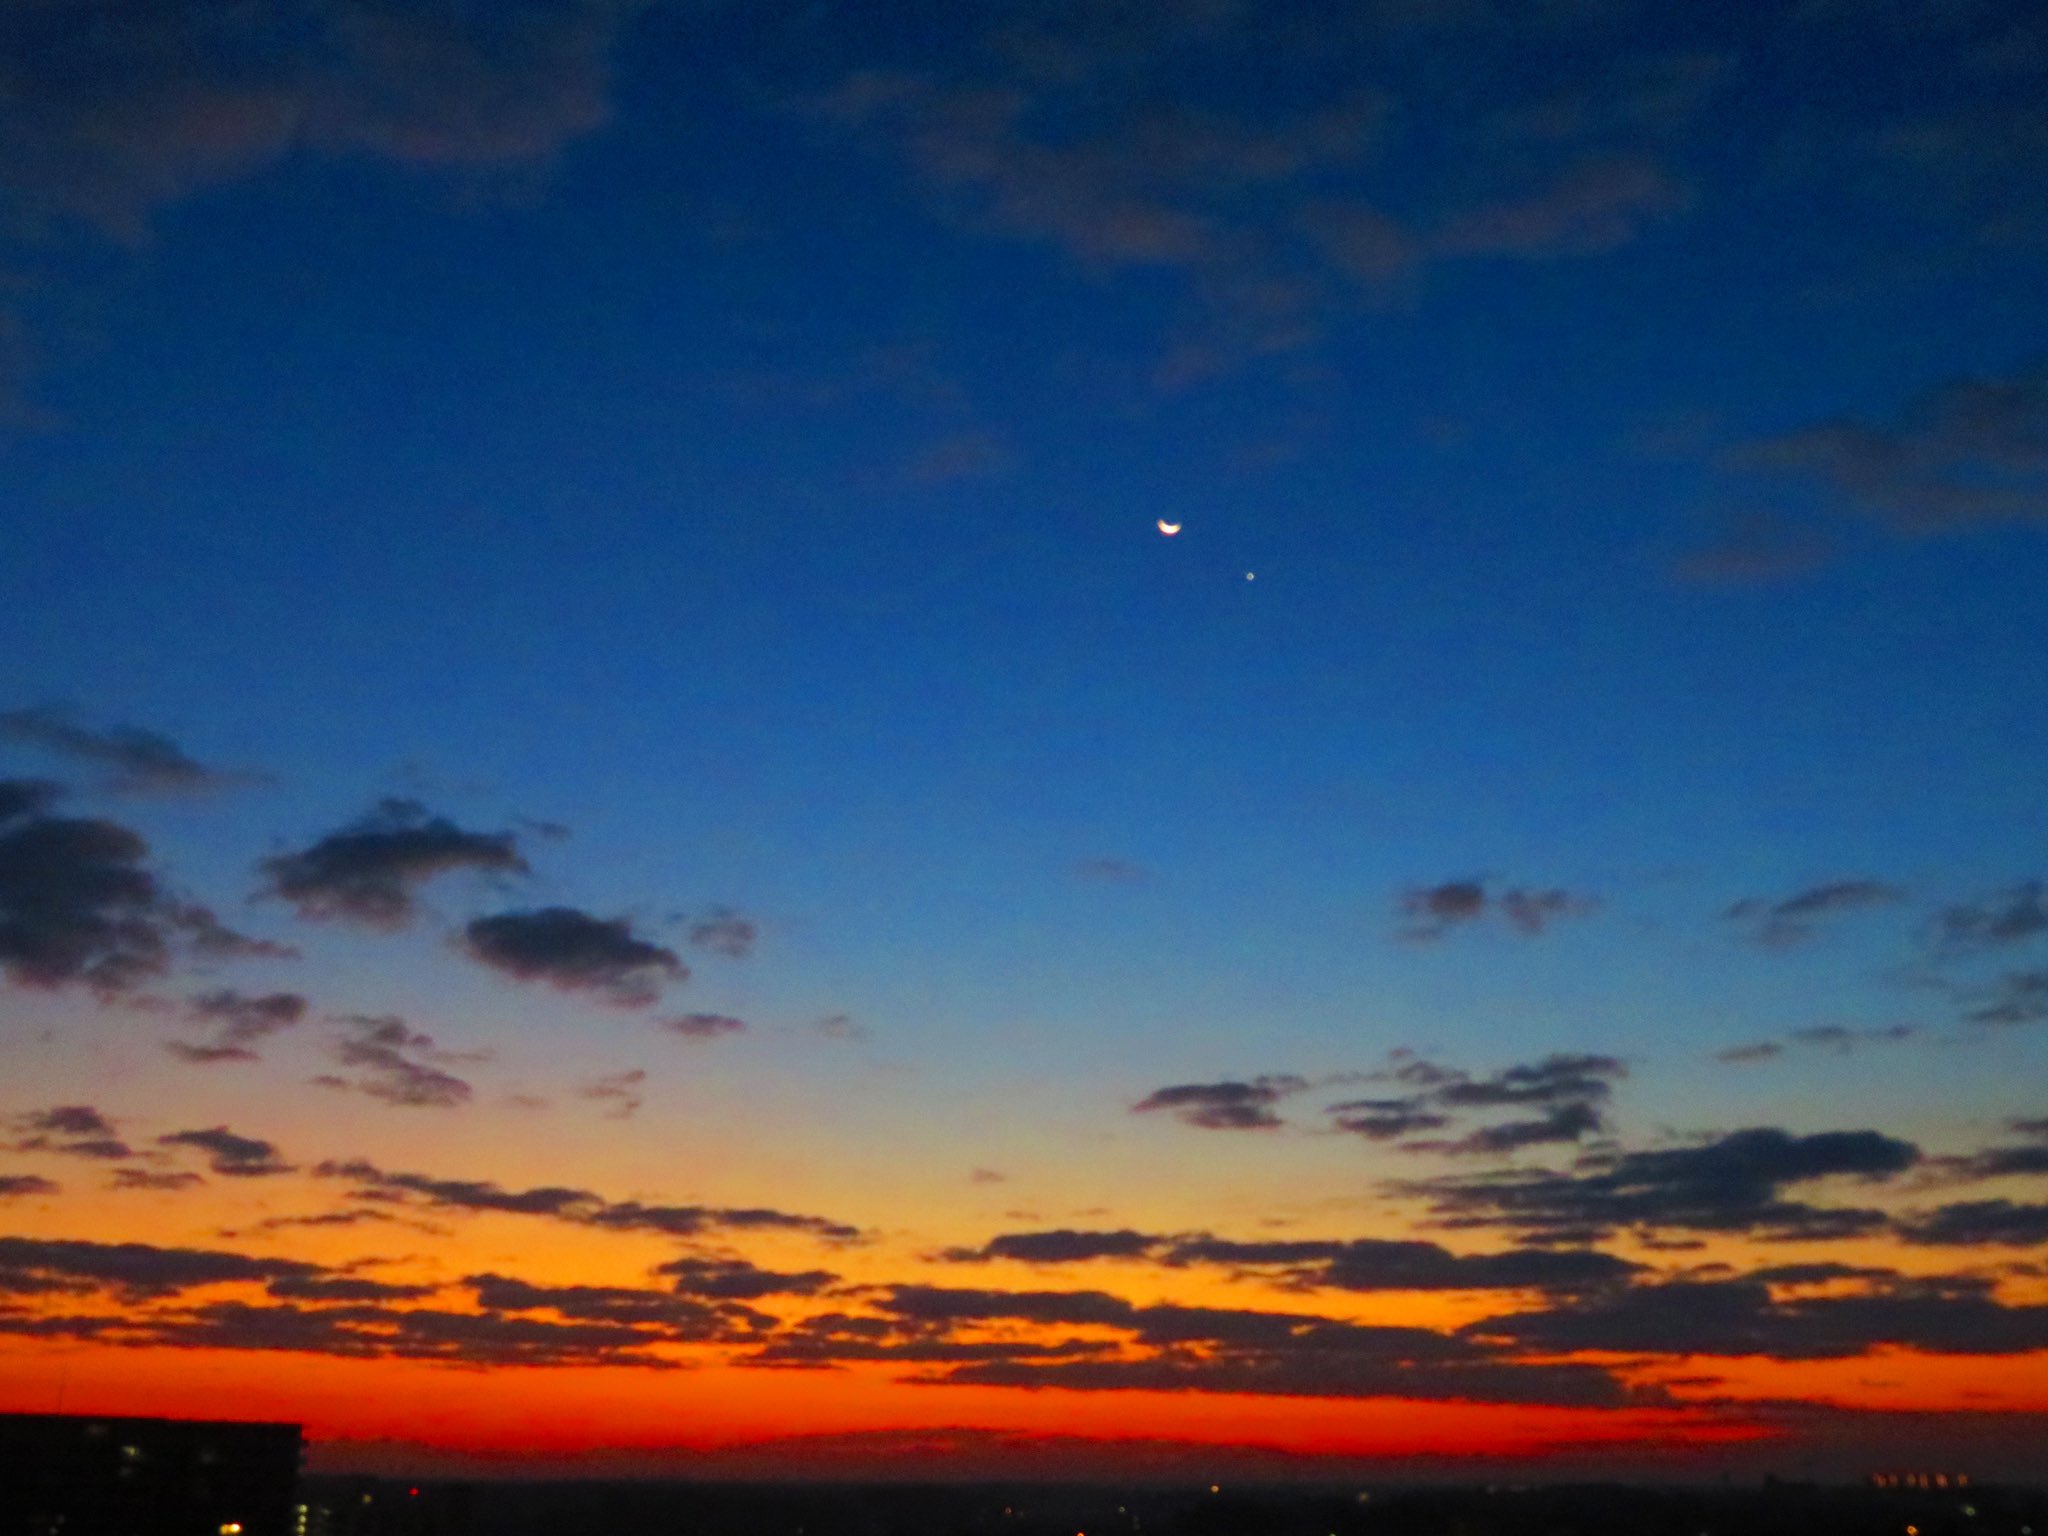 荒木健太郎 薄明の空がすごい綺麗です 地平線から朝の色が滲んだグラデーションで彩る空に 細い月と金星が寄り添うように浮かんでいます T Co Nolo1r4aof Twitter